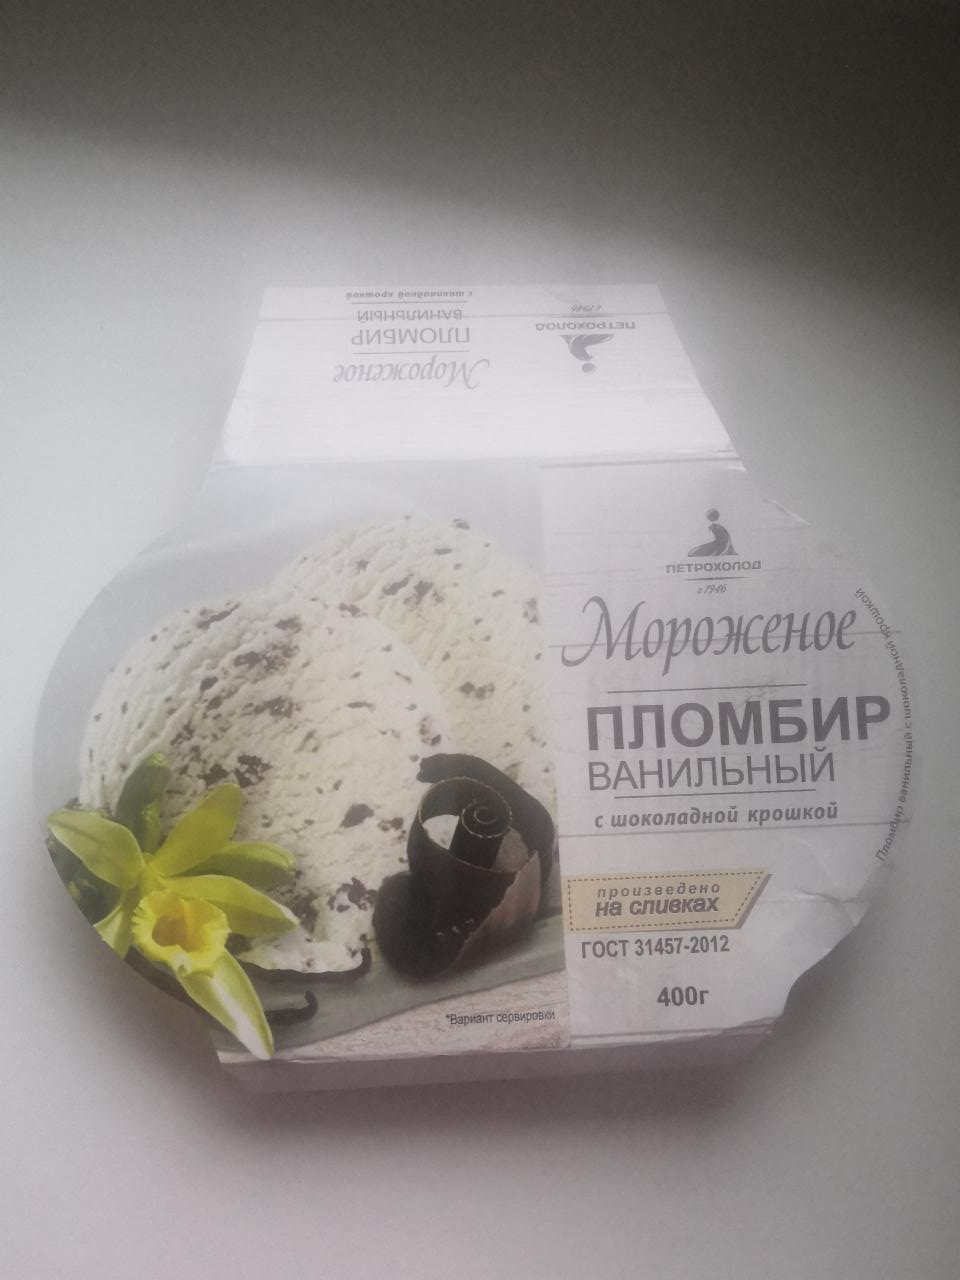 Фото - мороженое пломбир ванильный с шоколадной крошкой Петрохолод